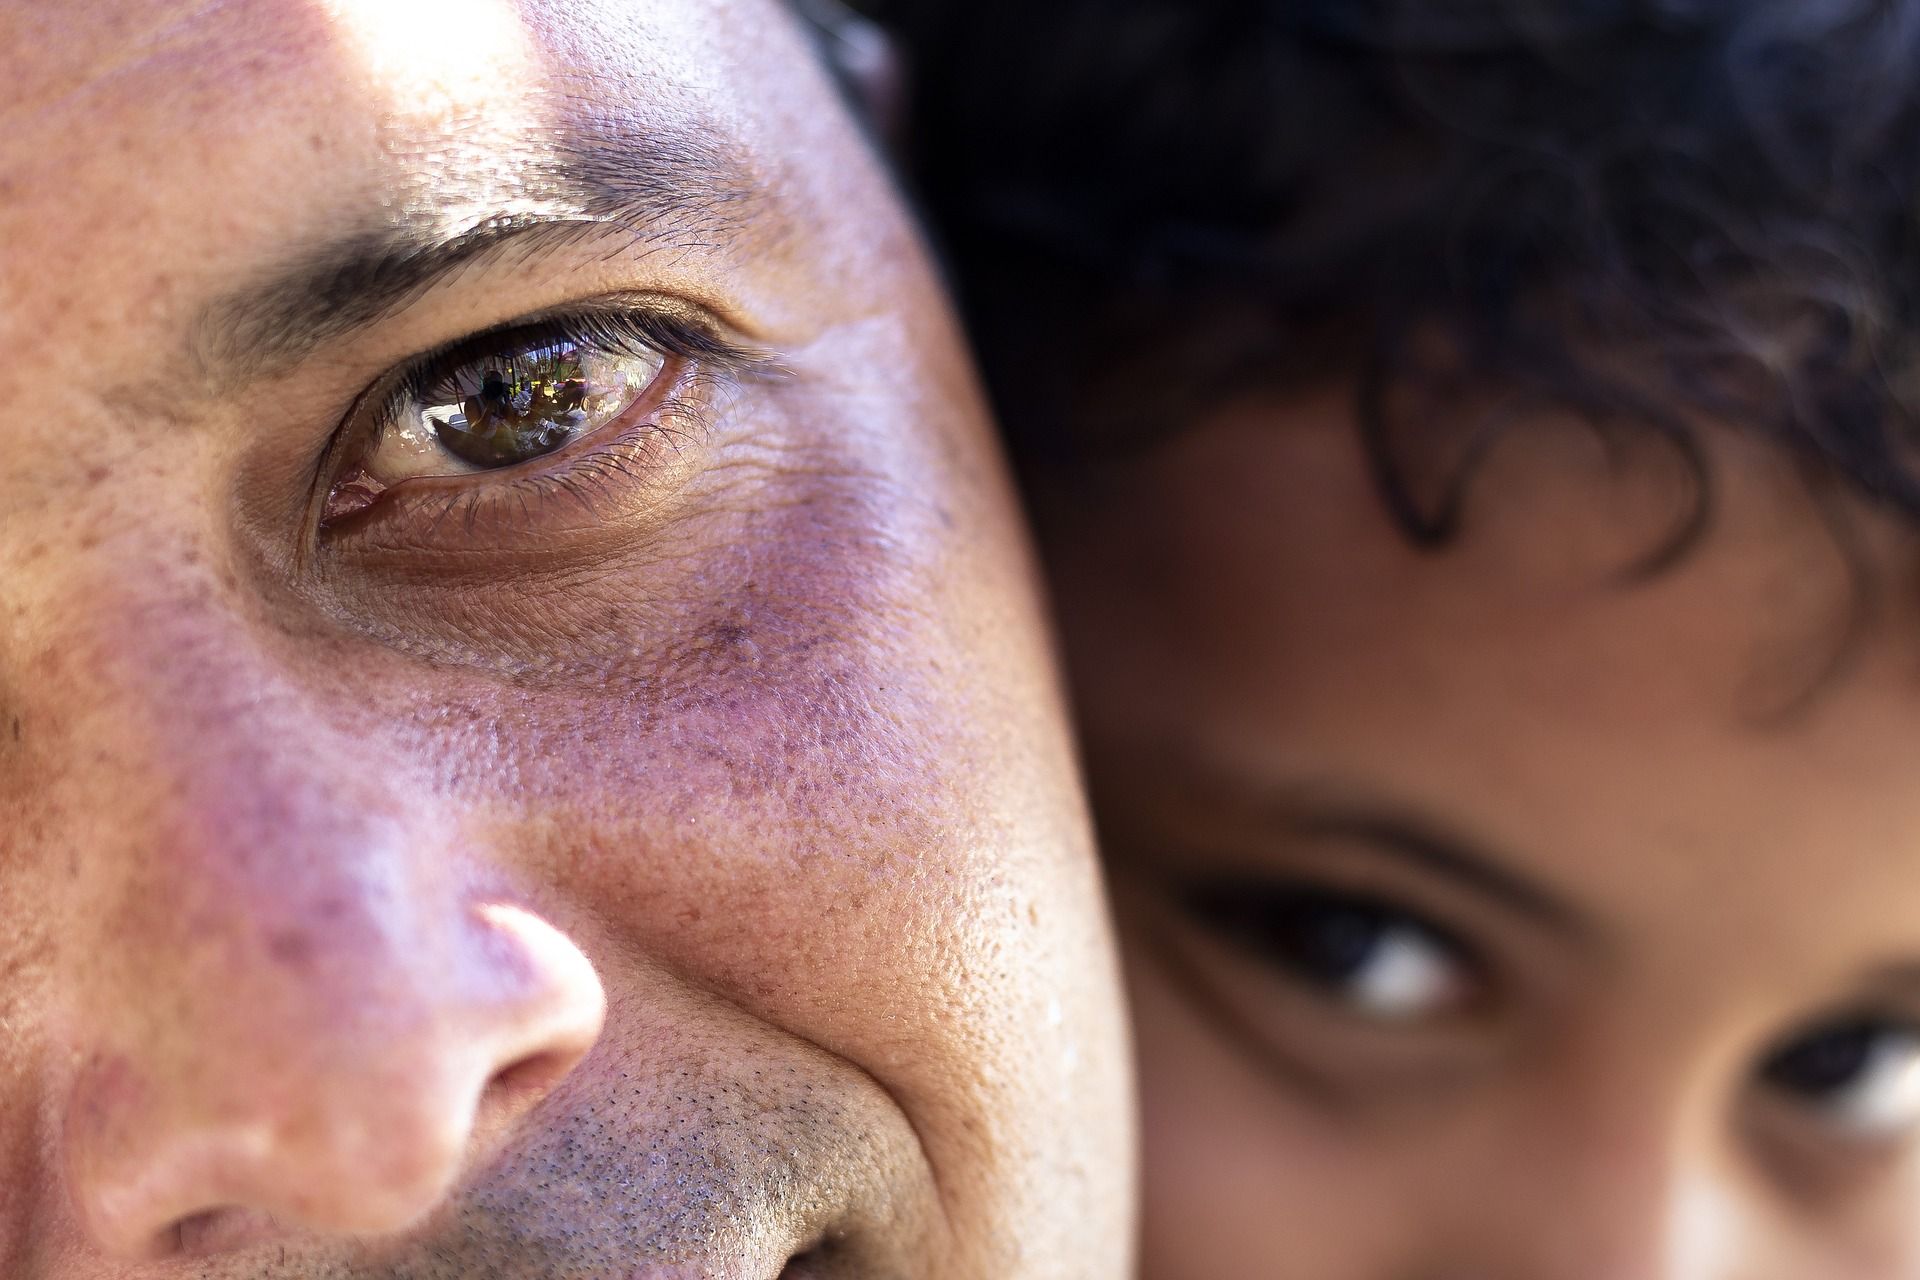 Le regard d'un père, sincèrement ému, et derrière lui le regard de son fils - Image par willypp de https://pixabay.com/fr/photos/portrait-p%C3%A8re-fils-les-yeux-enfant-5483735/